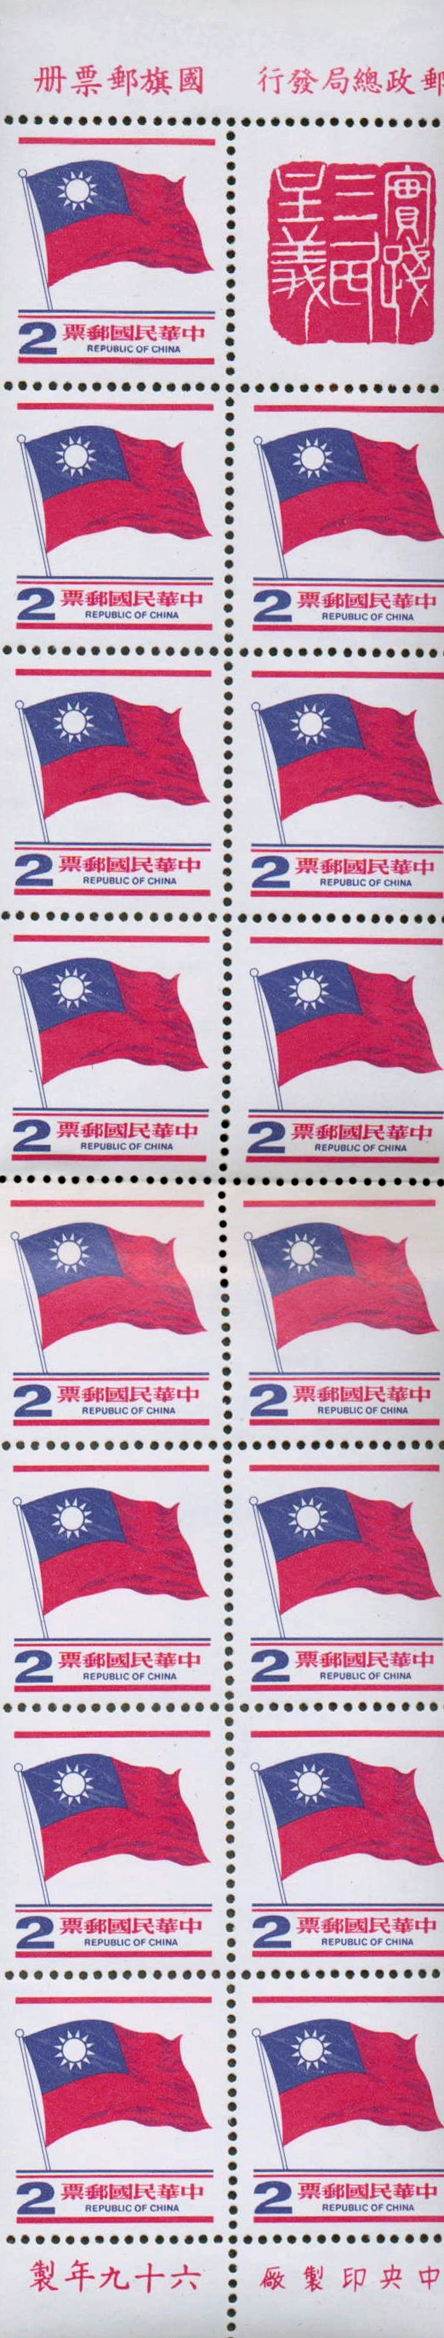 (D101.10)Definitive 101 National Flag Postage Stamps (1978)